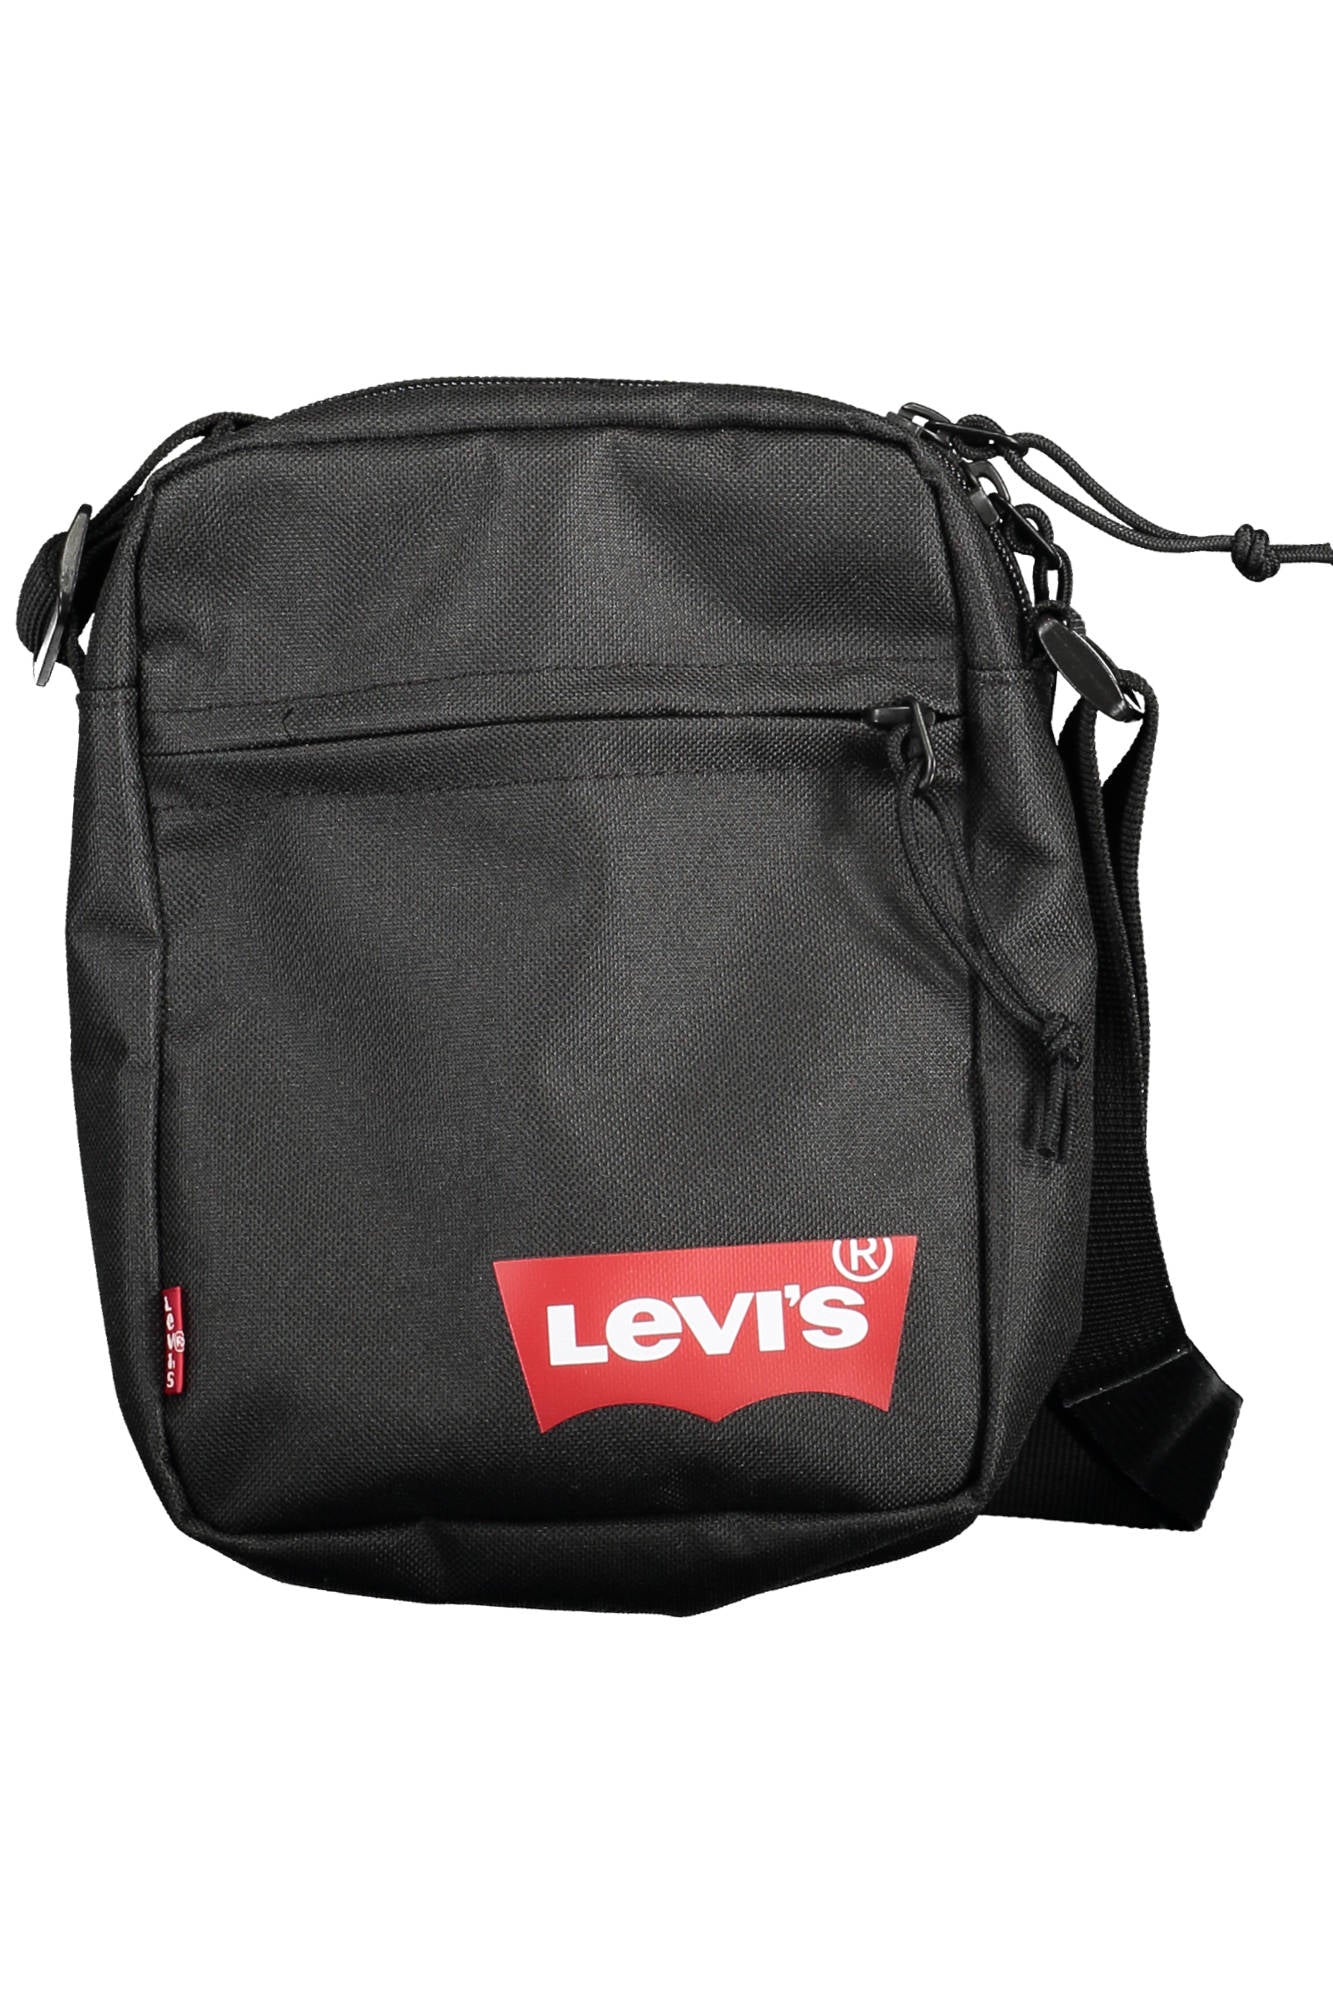 LEVIS MAN BLACK SHOULDER BAG